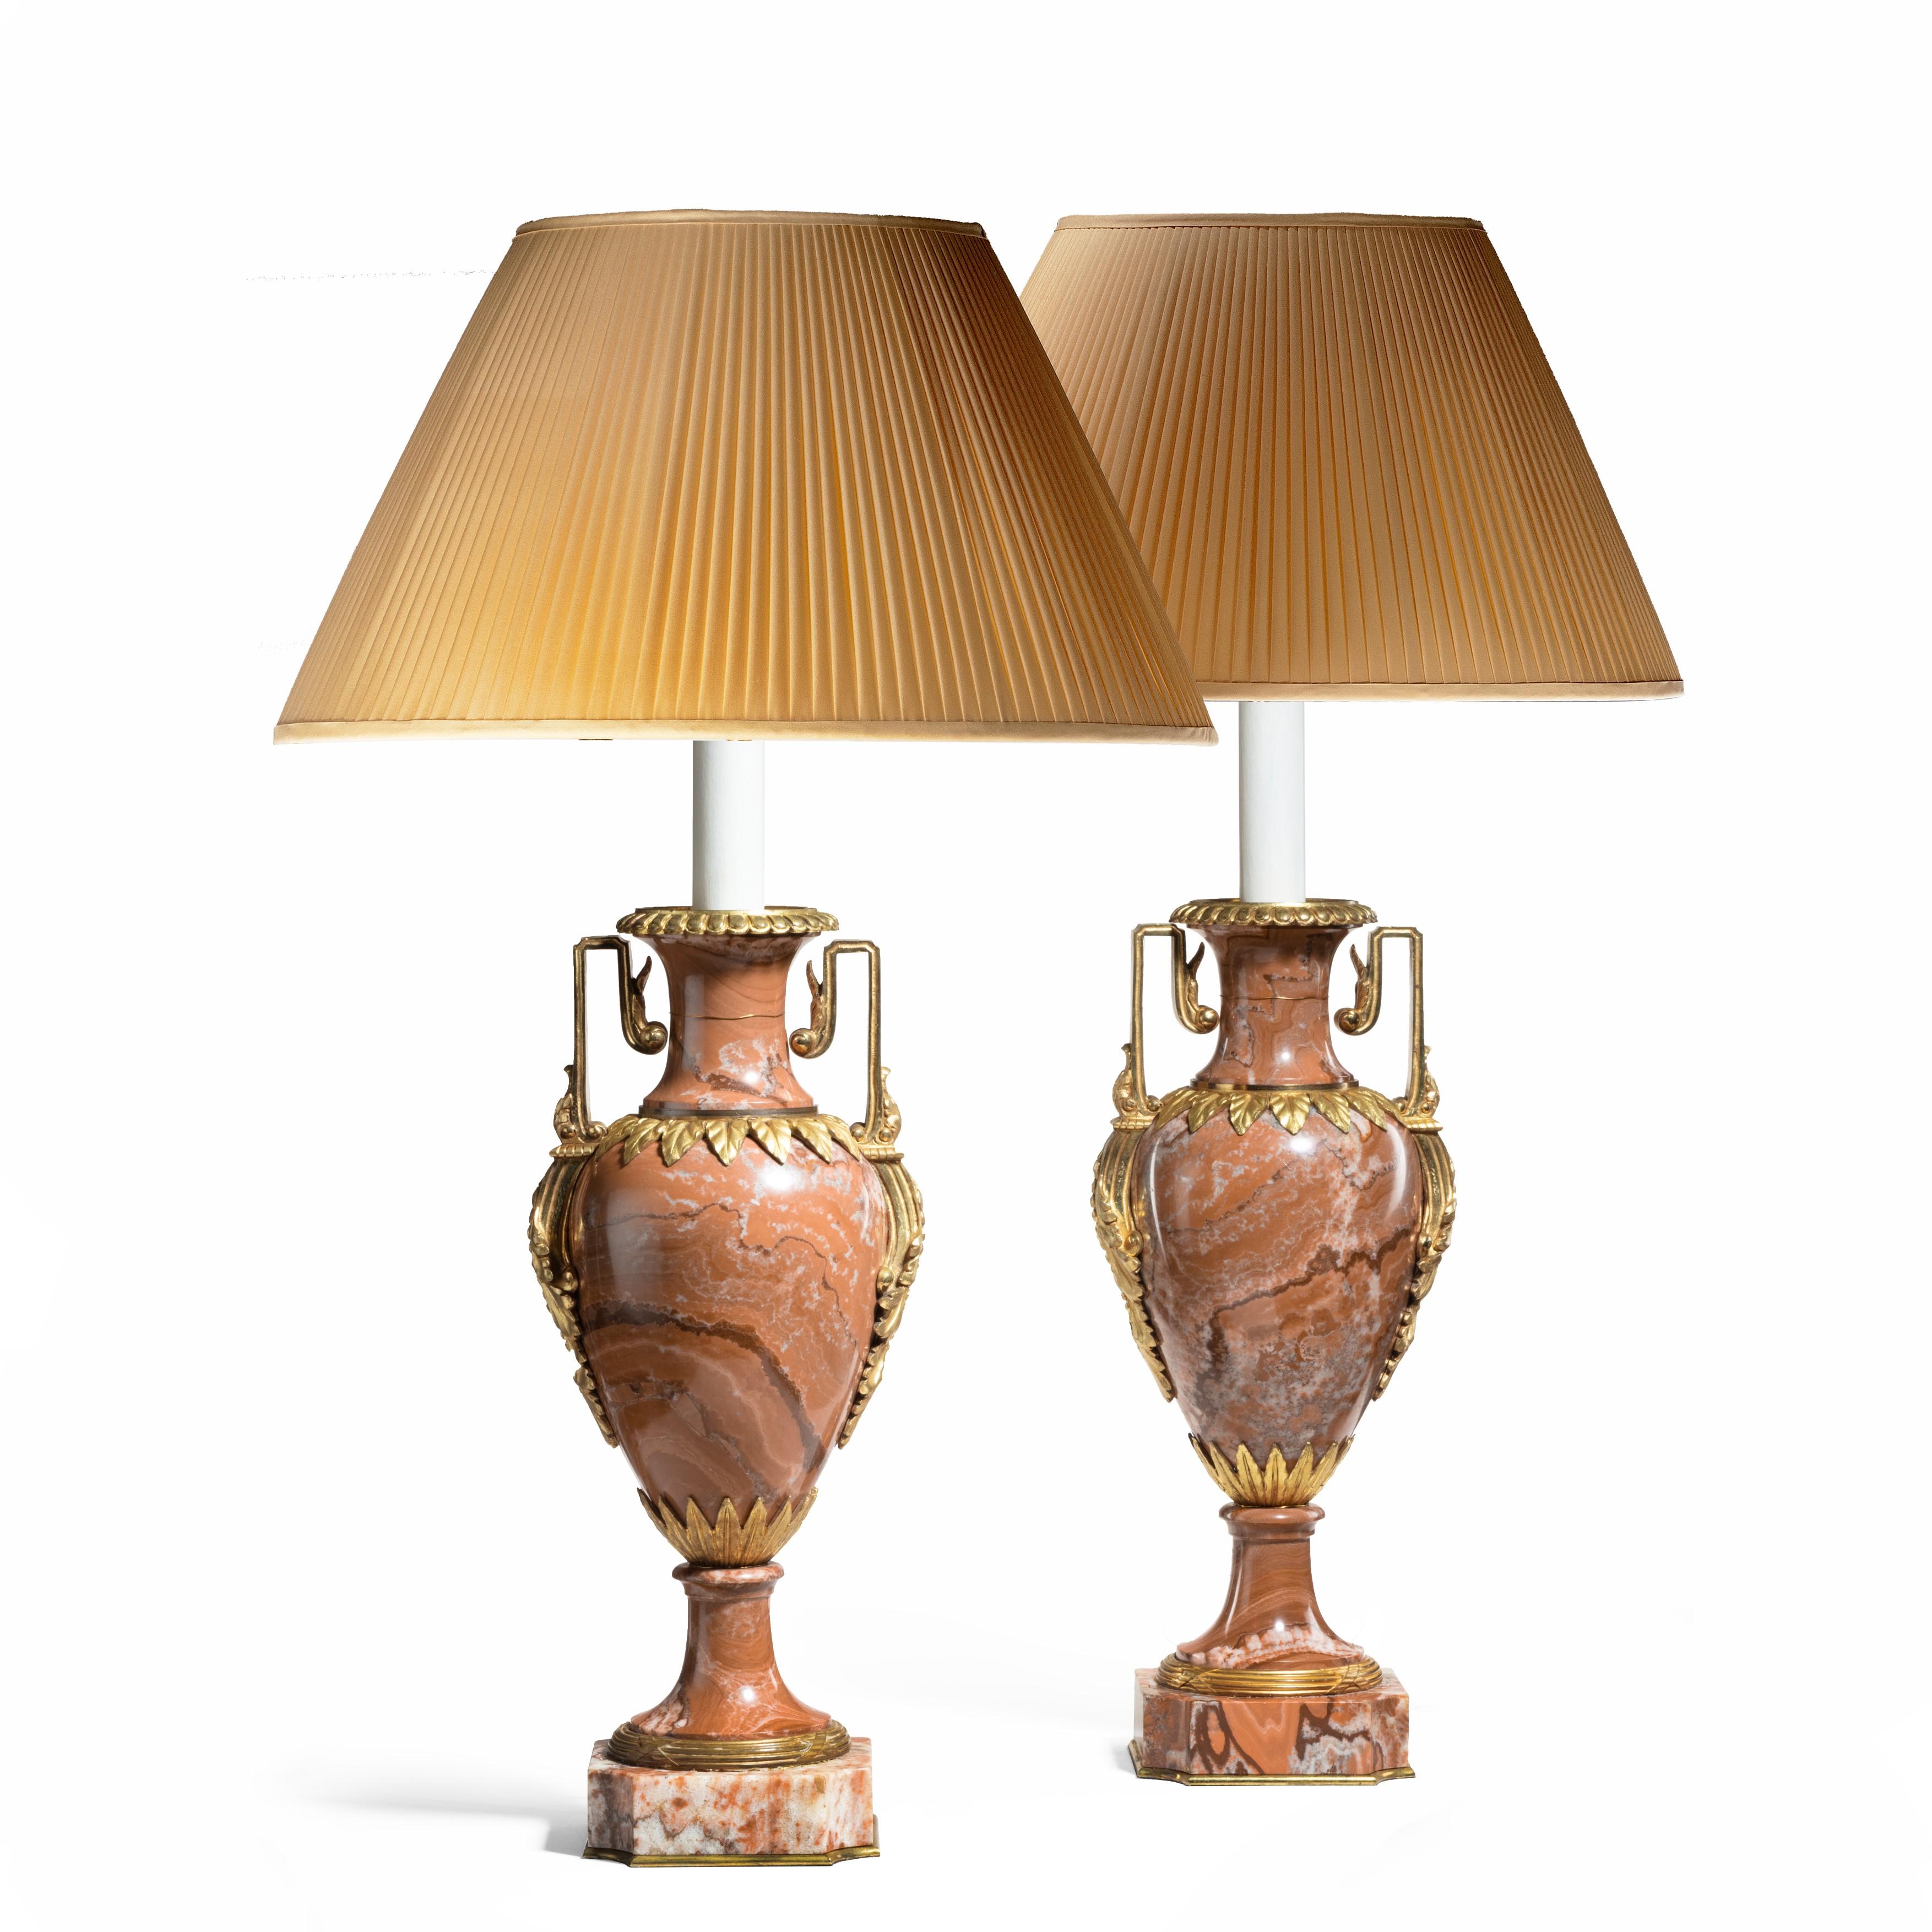 Une paire de bons vases Napoléon III en marbre rouge, chacun monté en bronze doré avec une paire d'anses carrées et des colliers de feuilles pointues, maintenant équipés pour l'électricité. Français, vers 1870 (abat-jour non inclus).
 